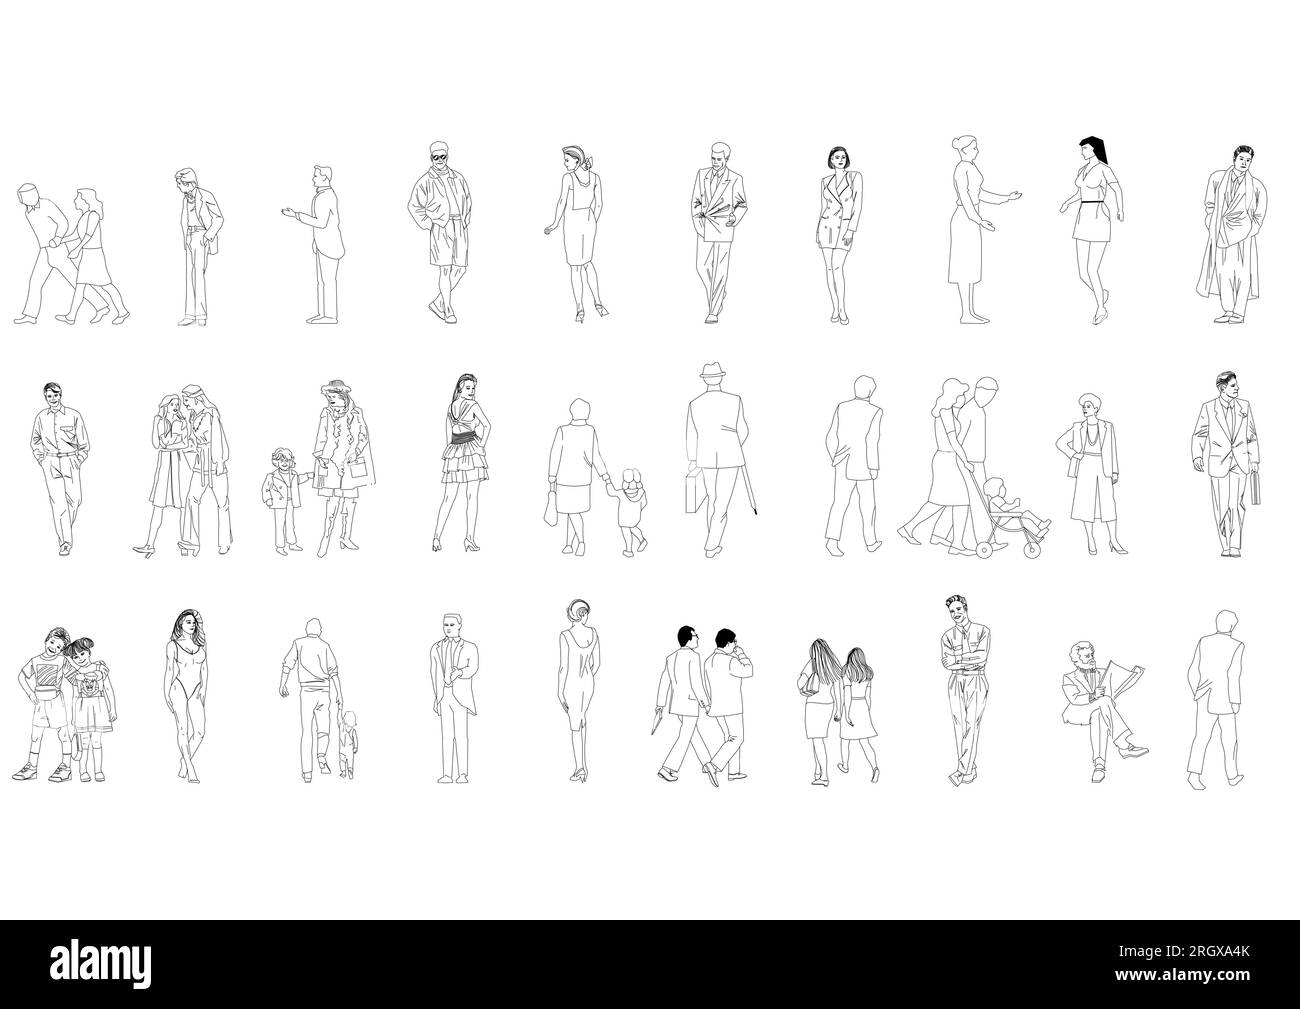 Zeigen Sie Menschen, die Männer-Frauen-Vektorbilder zeichnen. Isolierte grafische Personen isolierte Skizzen Einfachheit von Menschen gezeichnete durchgehende Linien. Stock Vektor